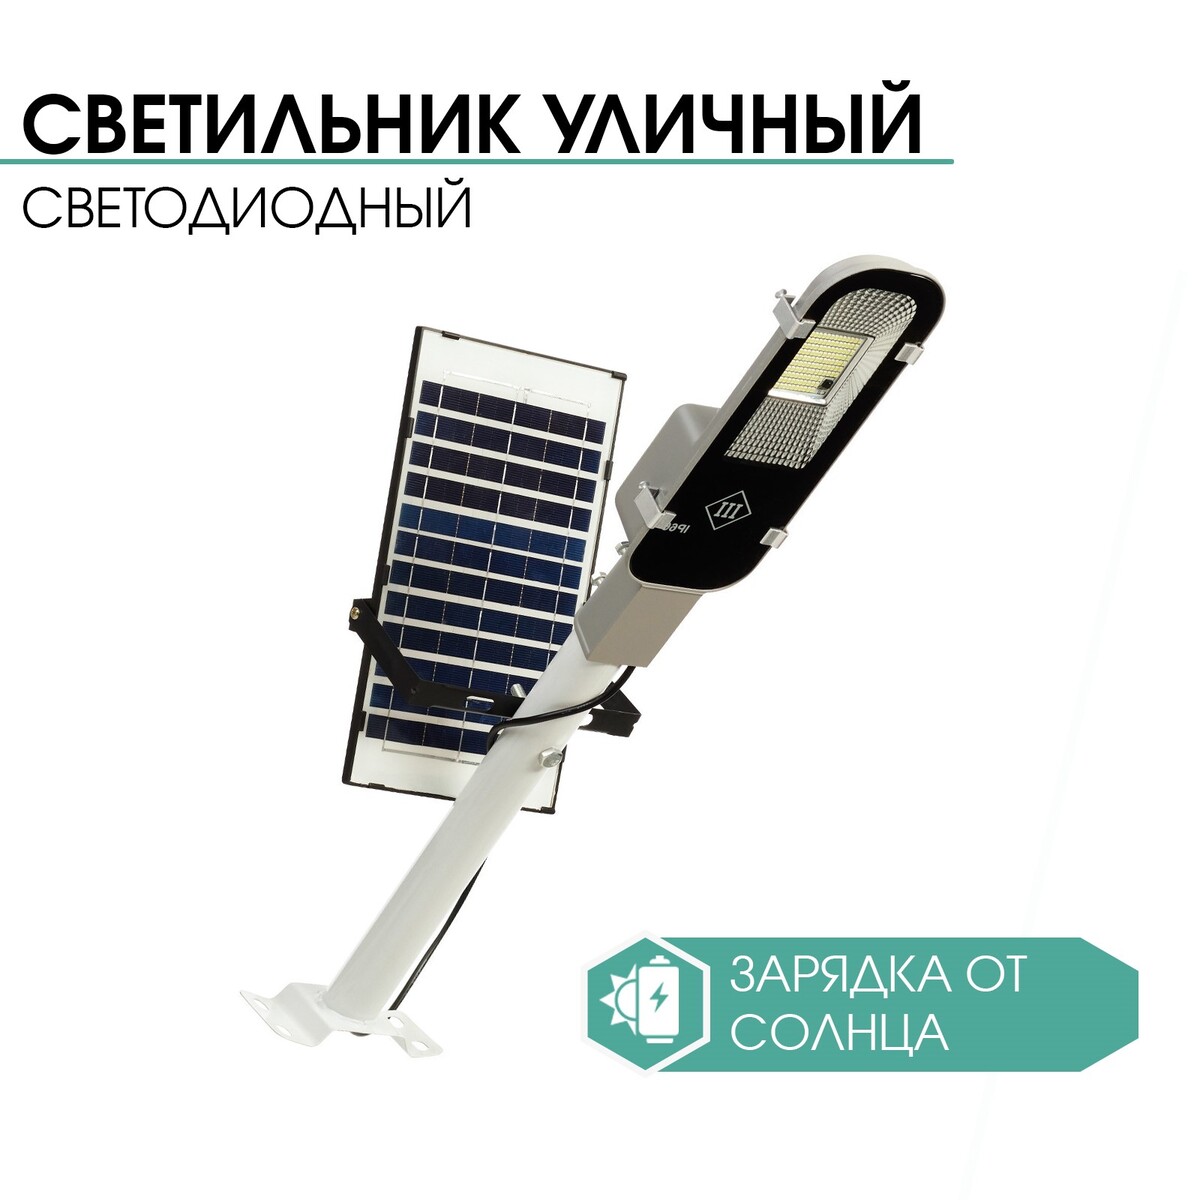 Светильник уличный аккумуляторный настенный, фонарь, 121 диод